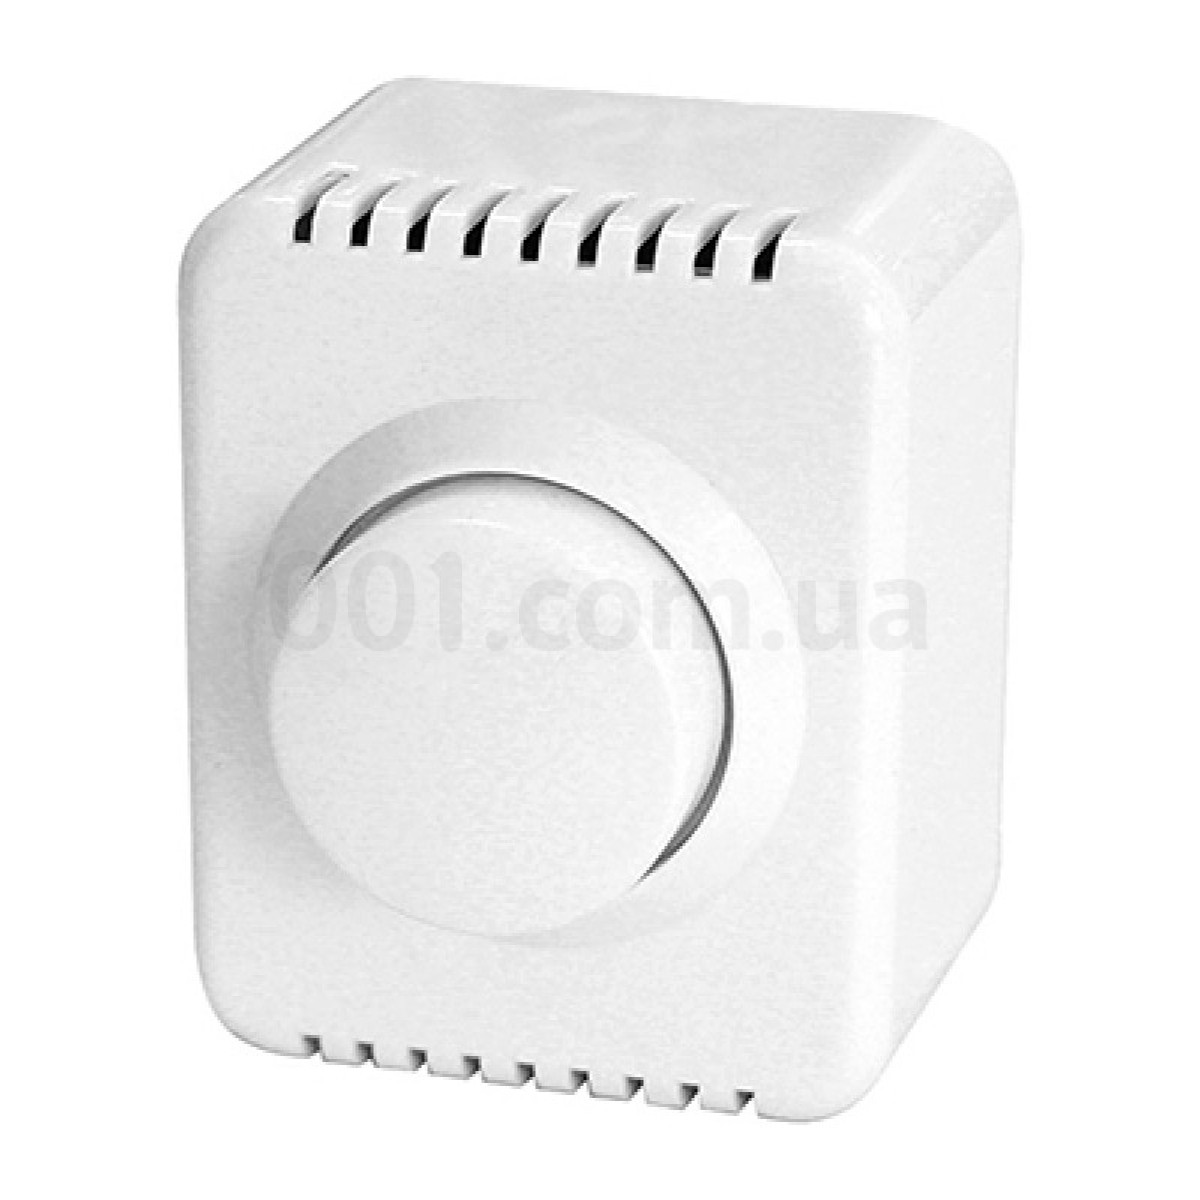 Светорегулятор (диммер) 500 Вт для внешнего монтажа белый e.touch.1311.w серия e.touch, E.NEXT 98_98.jpg - фото 1